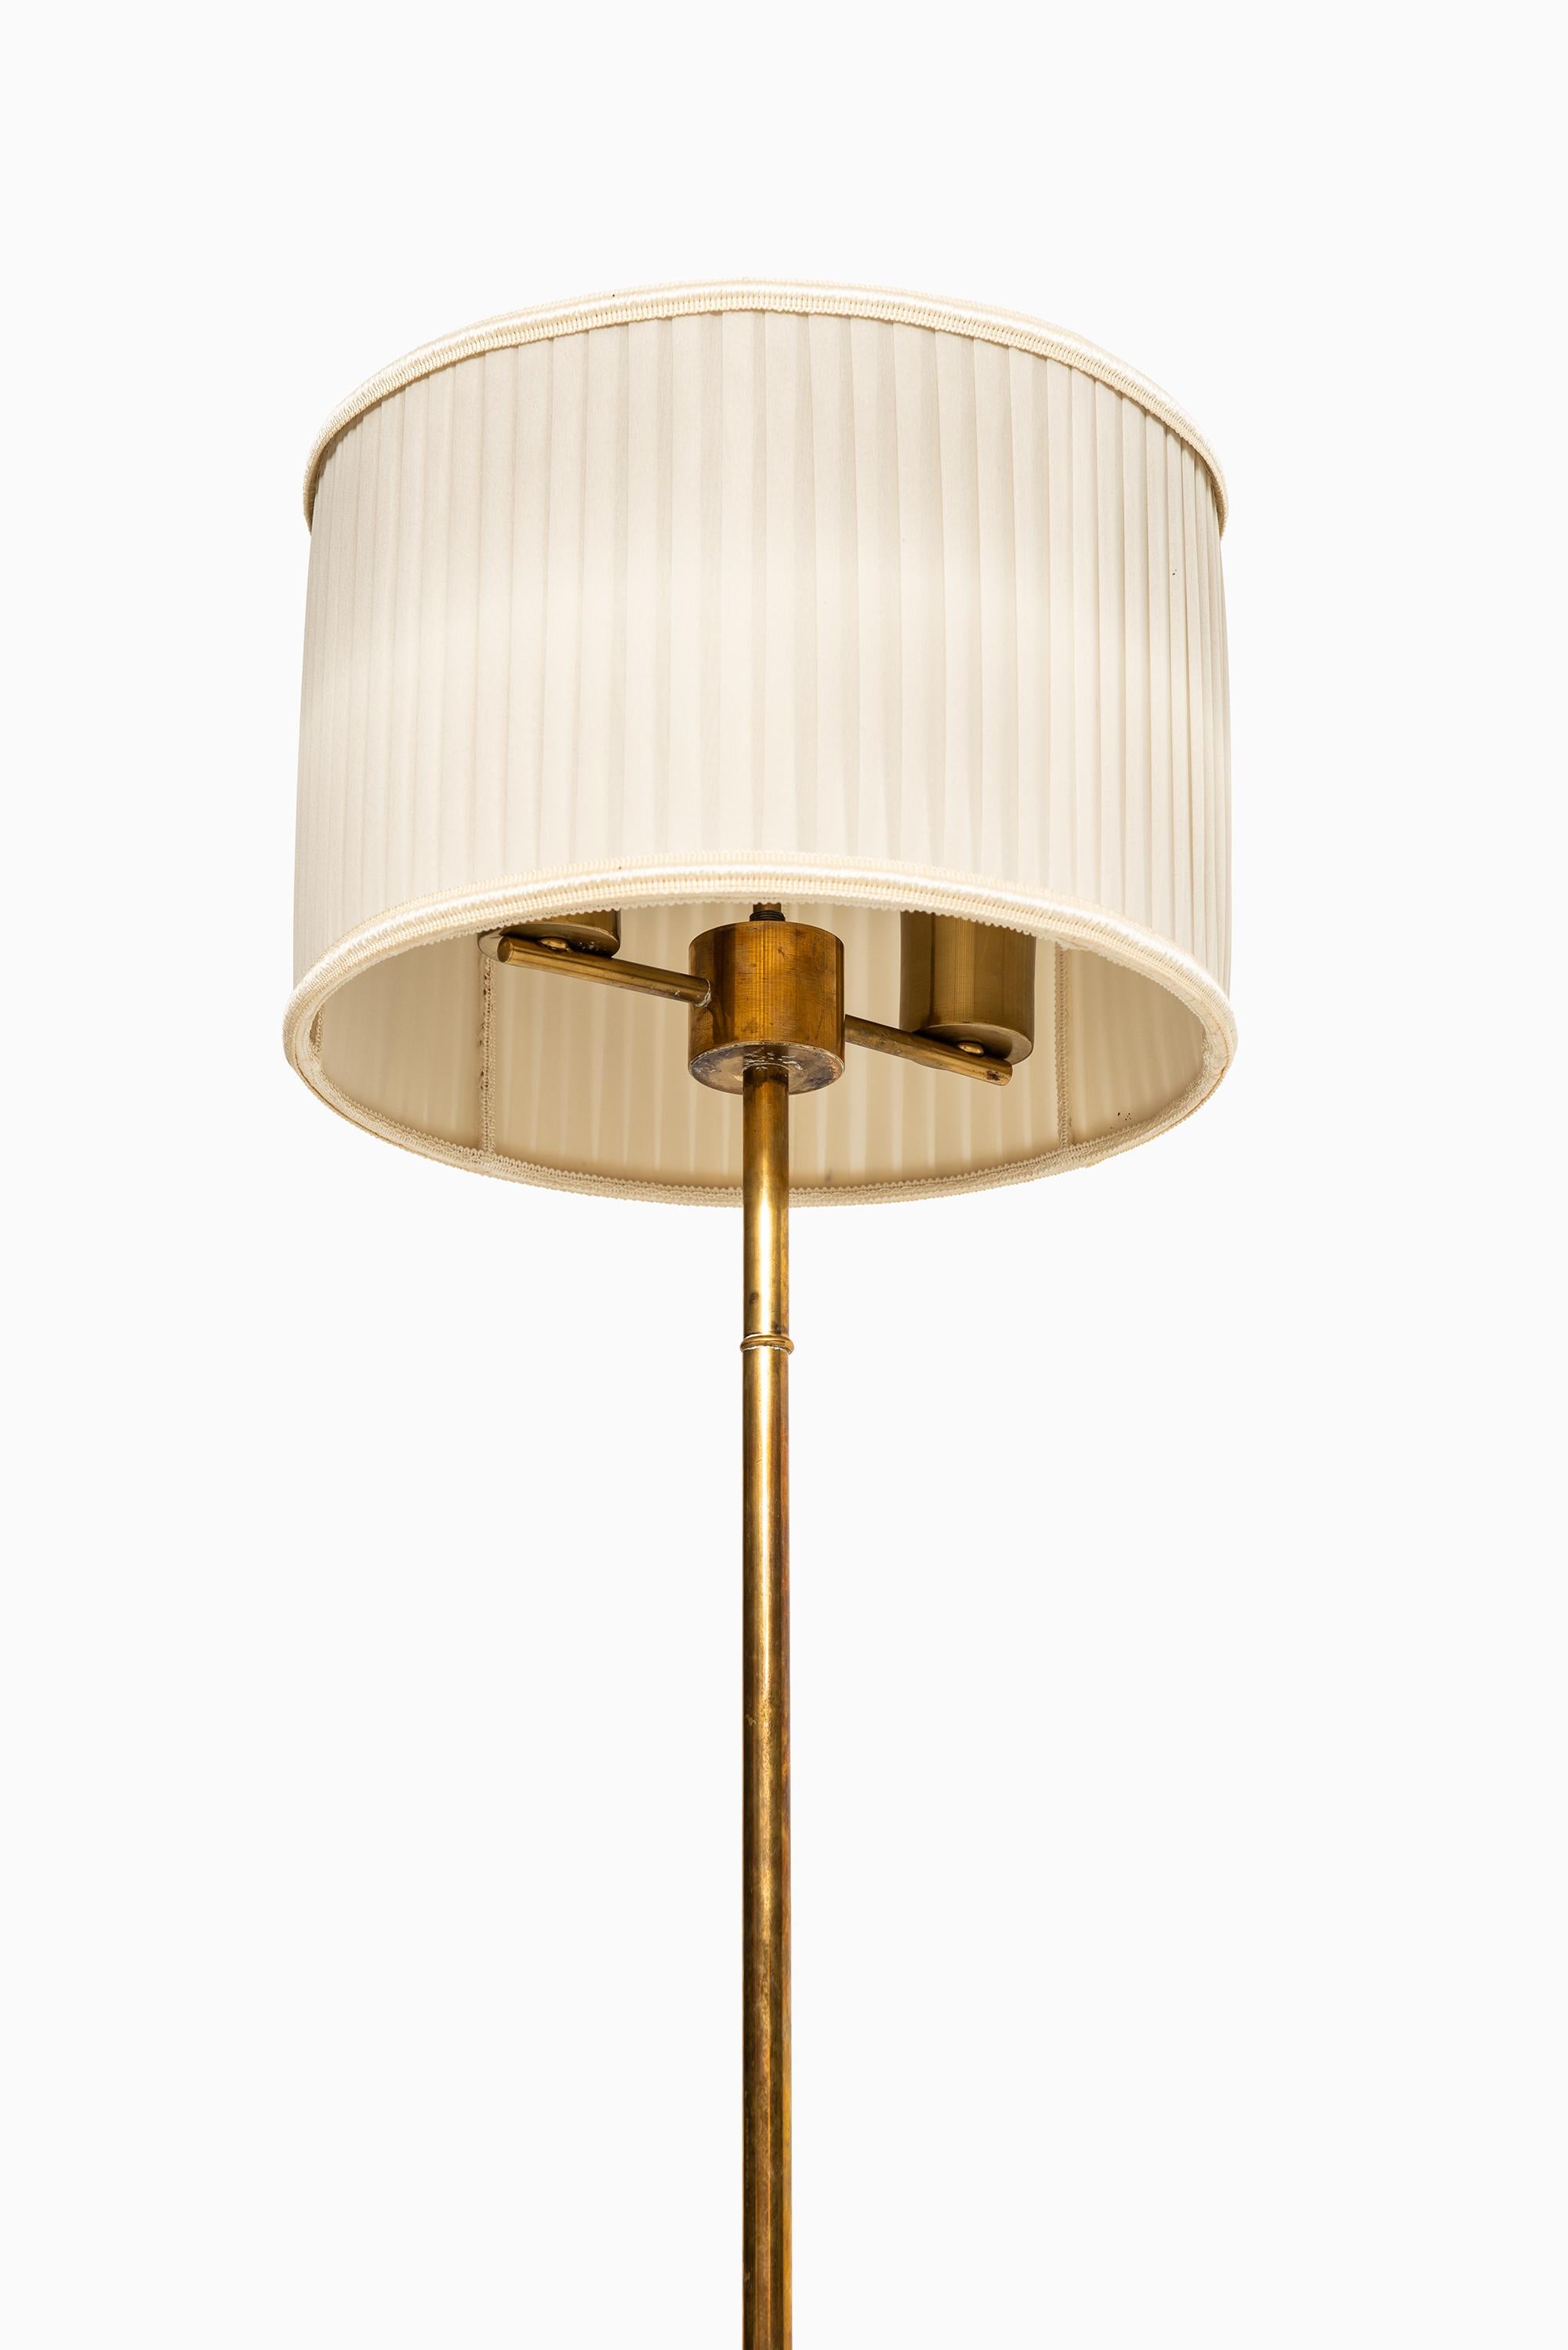 Scandinavian Modern Floor Lamp in Brass Produced by Stilarmatur in Tranås, Sweden For Sale